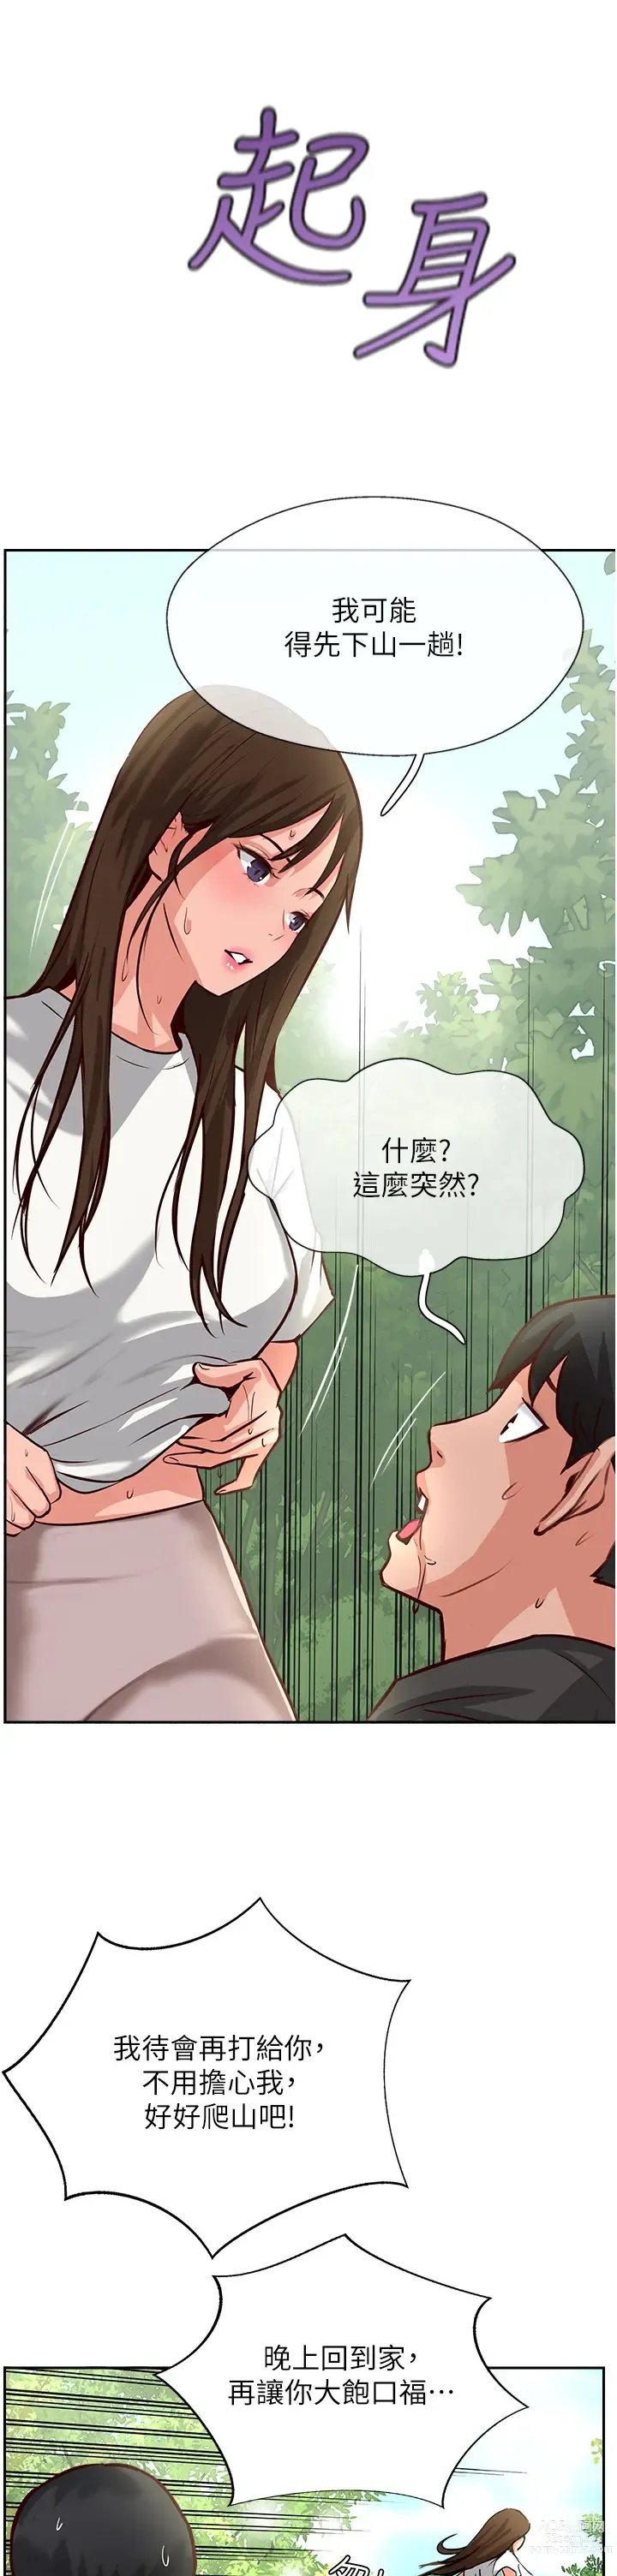 Page 27 of manga 攻顶传教士 32-51 完结 中文无水印